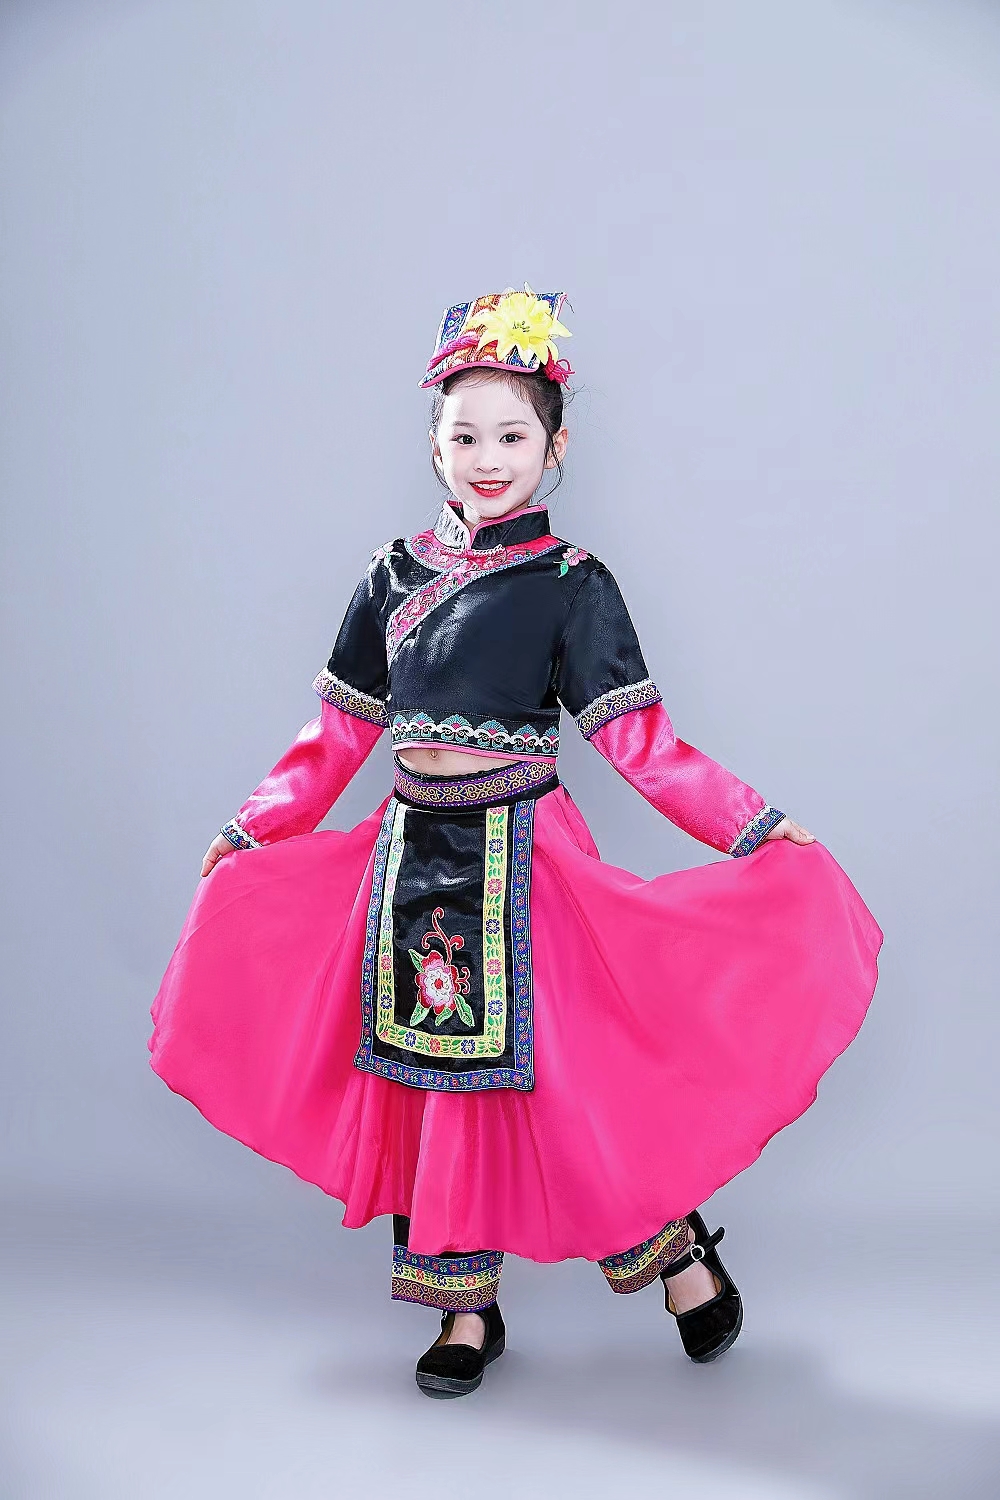 十一届小荷风采小手绣花献给党舞蹈演出服少数民族彝族羌族表演服